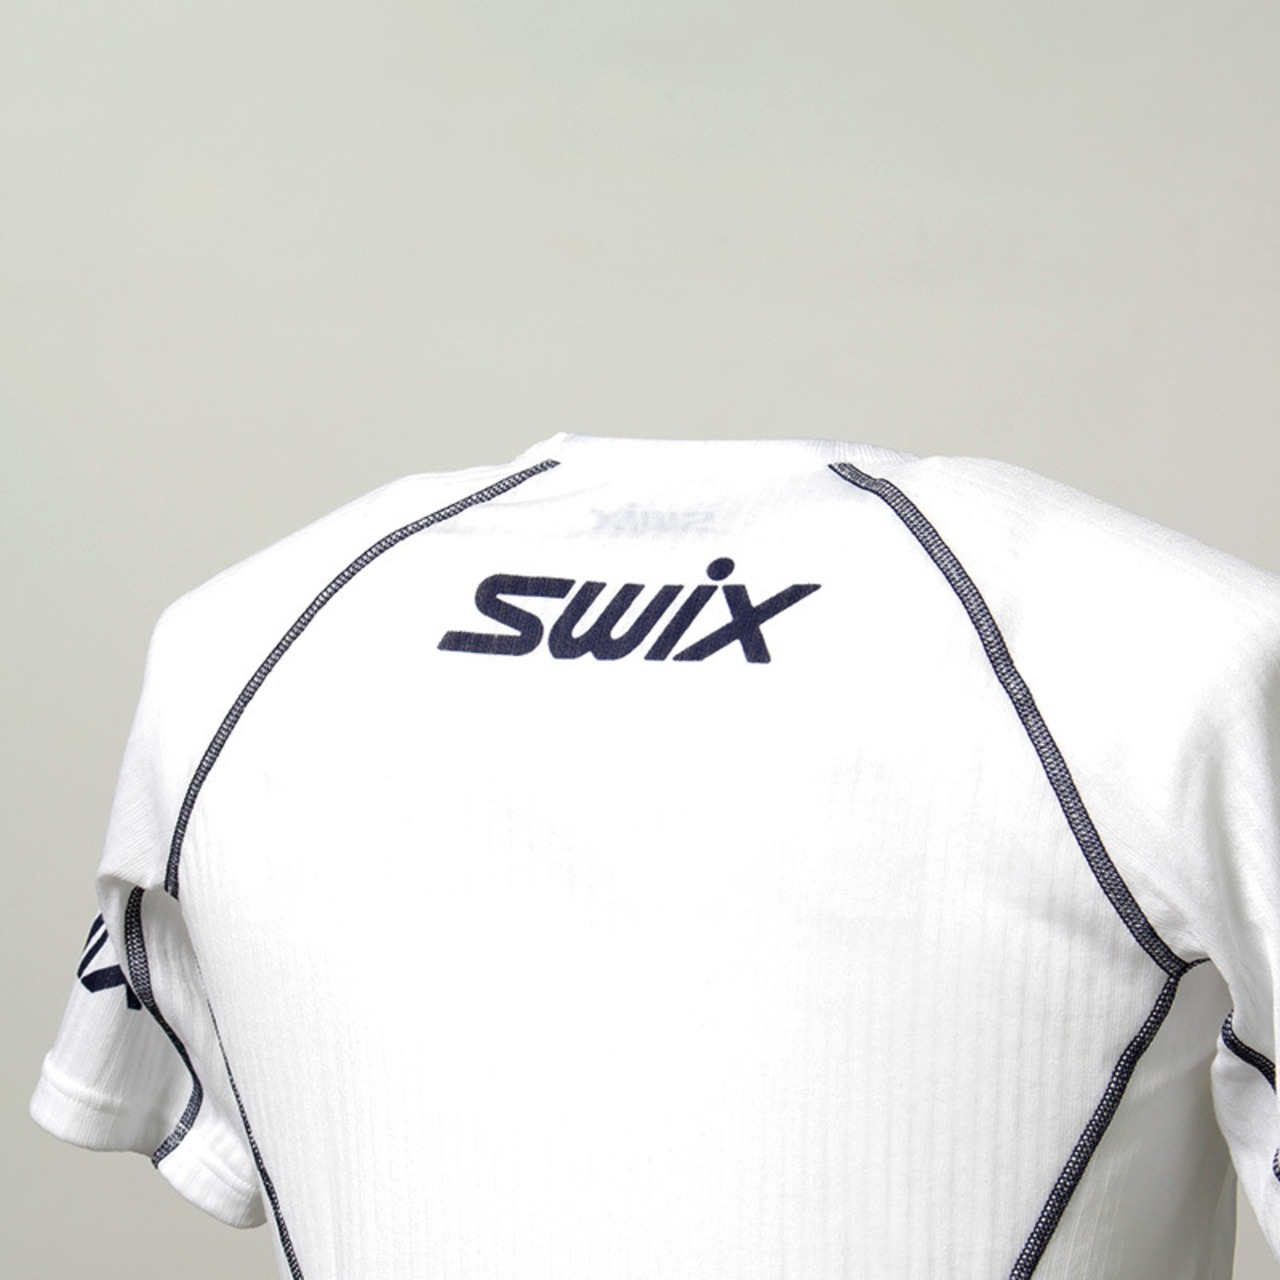 SWIX(スウィックス) レースボディー SS 半袖 メンズ 40451-00000 ベースレイヤー ボディ フィットネス ランニング ウェア メンズ インナー アウトドア スポーツ